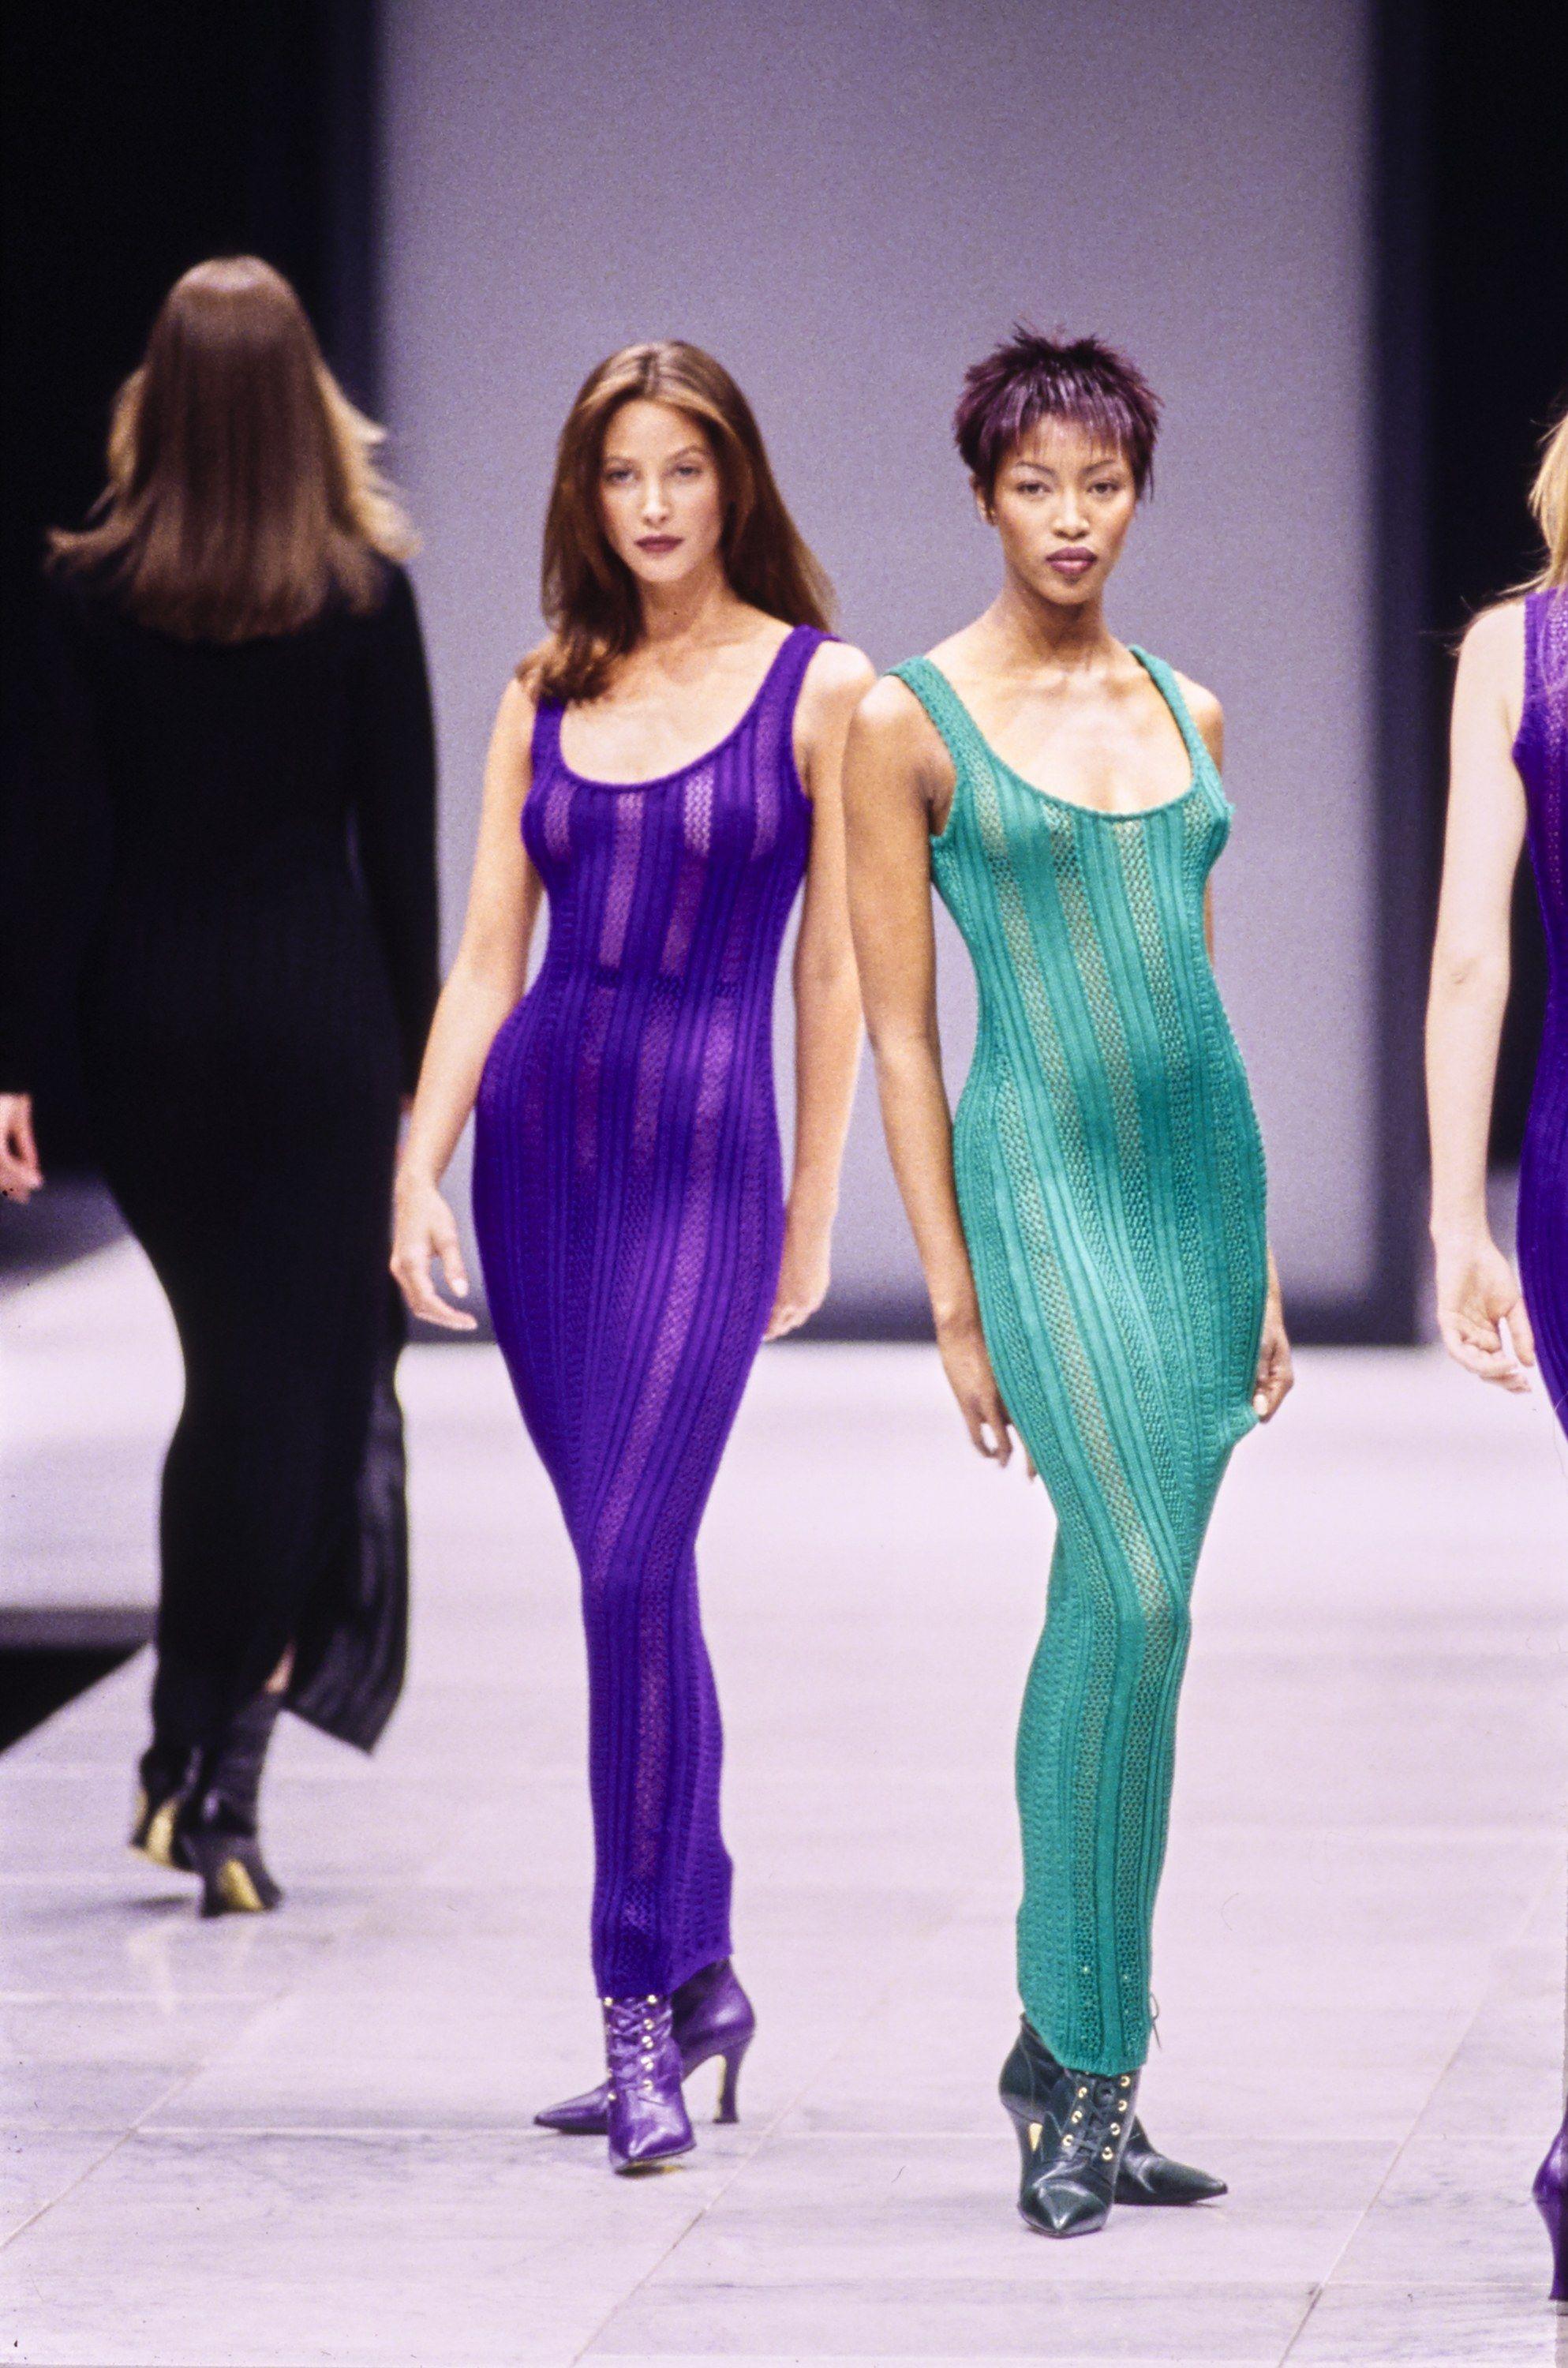 Voici une version sexy de la robe en maille, créée par Gianni Versace. Présenté en tant que look no 32 sur le défilé automne-hiver 1993 par Naomi Campbell, cet ensemble parle de lui-même ! Fabrice est composé d'un tissu en tricot/crochet et d'un